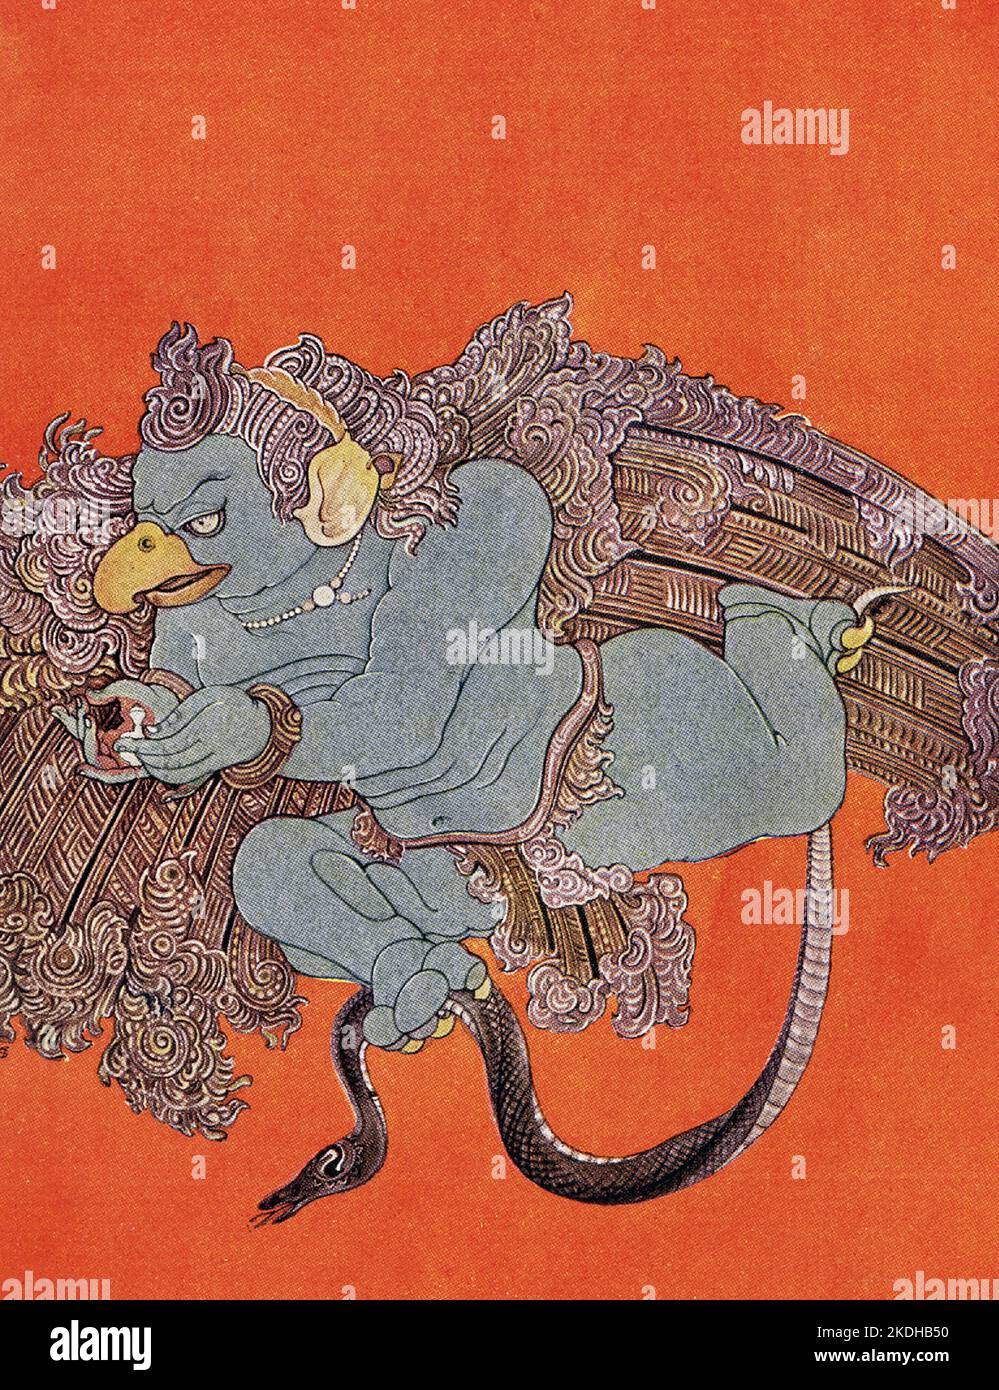 Dieser Druck zeigt Garuda aus dem Jahr 1913. Garuda, in der hinduistischen Mythologie, der Vogel (ein Drachen oder ein Adler) und das vahana (Berg) des gottes Vishnu. Im Rigveda wird die Sonne mit einem Vogel verglichen, der über den Himmel fliegt, und ein Adler trägt die Ambrosialsomenpflanze vom Himmel auf die Erde. Die mythologische Darstellung von Garudas Geburt im Mahabharata identifiziert ihn als den jüngeren Bruder von Aruna, dem Wagenlenker des sonnengottes Surya Stockfoto